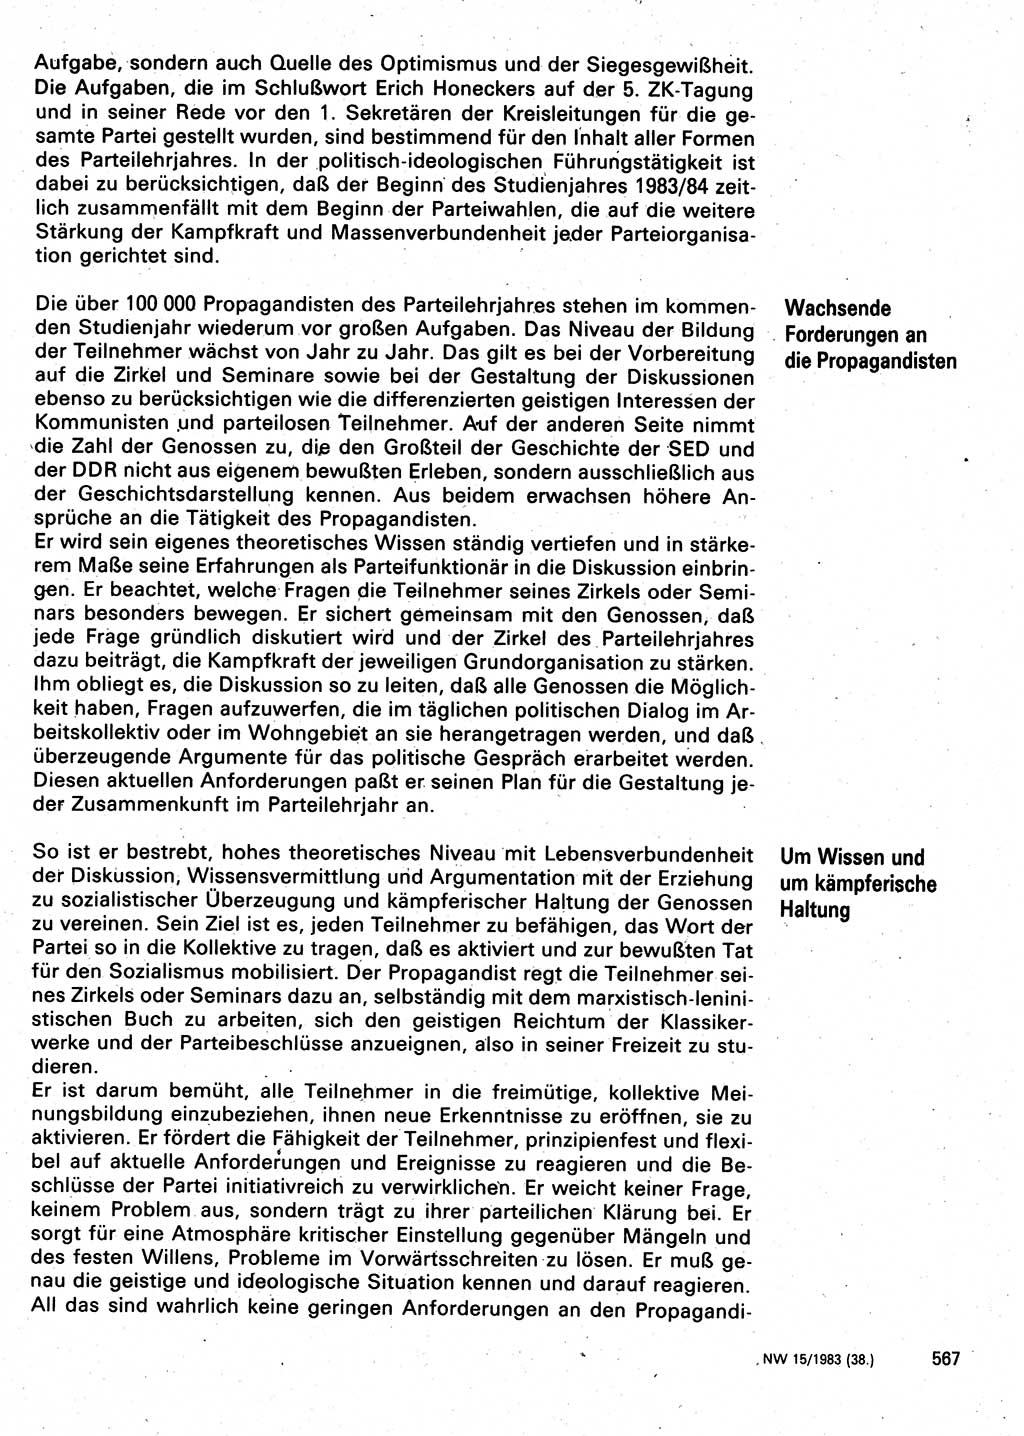 Neuer Weg (NW), Organ des Zentralkomitees (ZK) der SED (Sozialistische Einheitspartei Deutschlands) für Fragen des Parteilebens, 38. Jahrgang [Deutsche Demokratische Republik (DDR)] 1983, Seite 567 (NW ZK SED DDR 1983, S. 567)